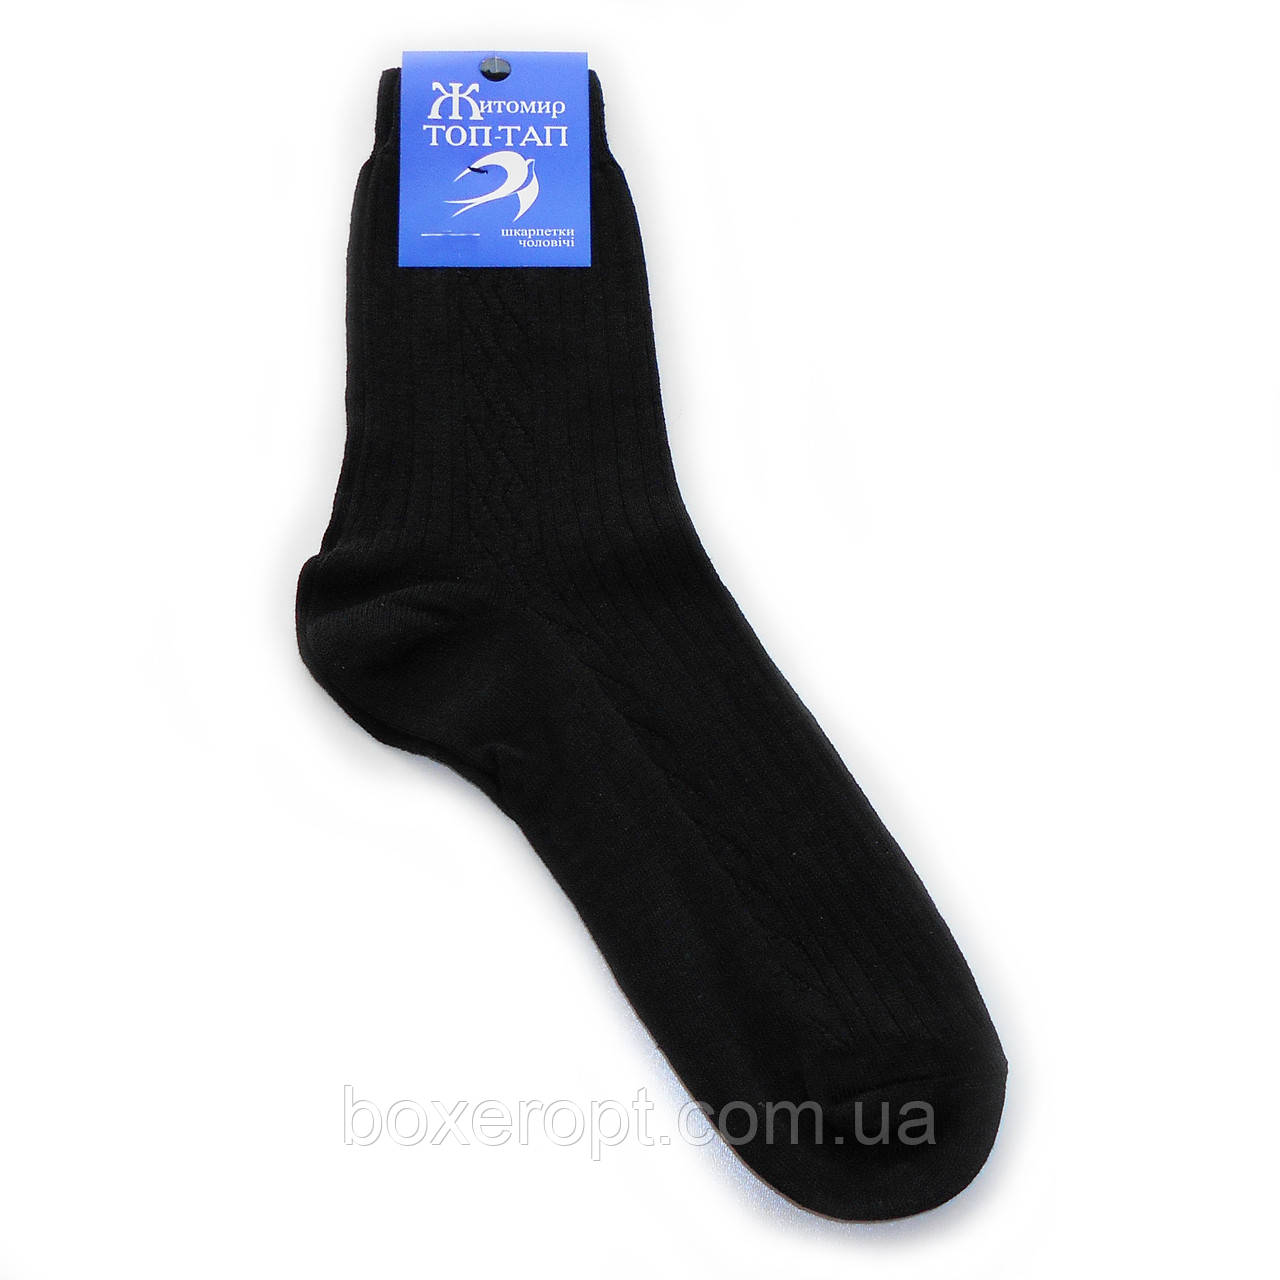 Чоловічі шкарпетки ТОП-ТАП - 15.00 грн./пара (напівшерсть, чорні)